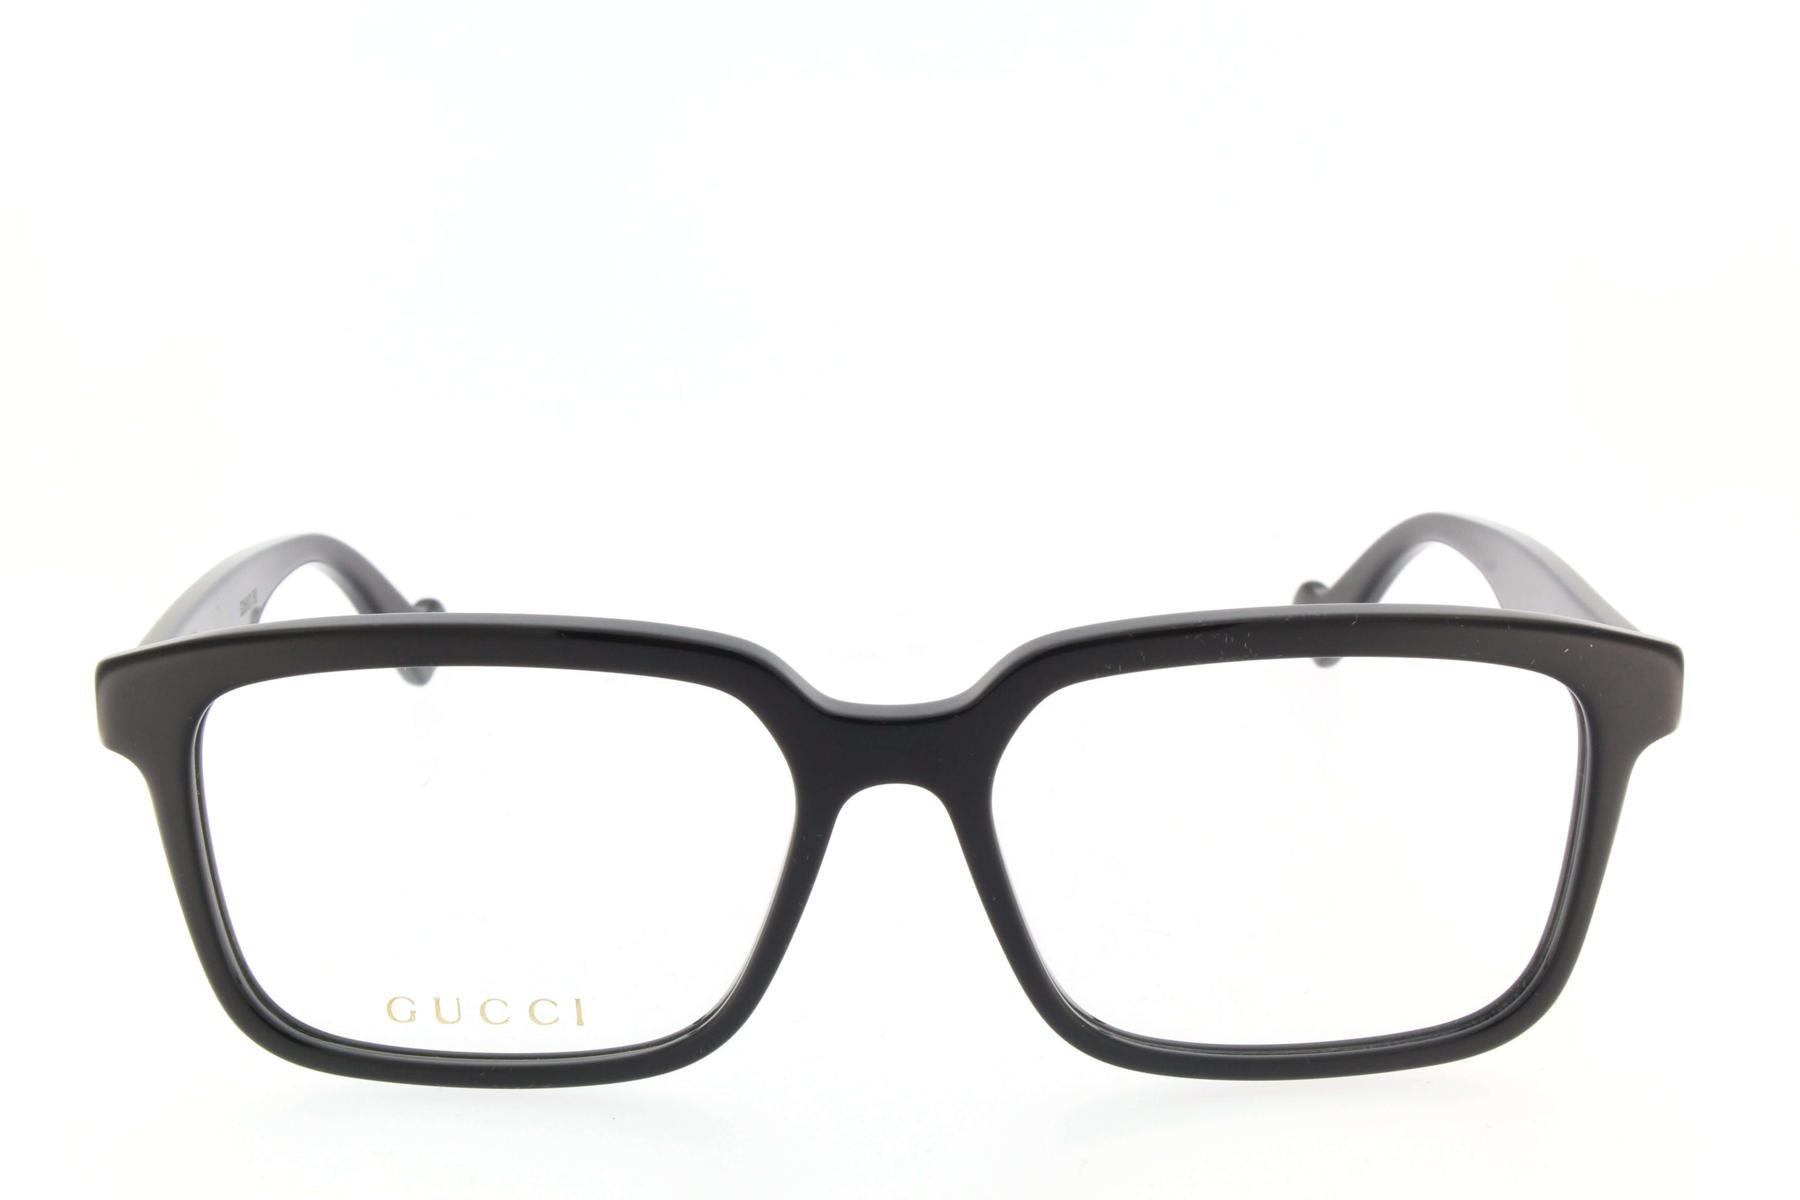 Gucci Eyeglasses in Black